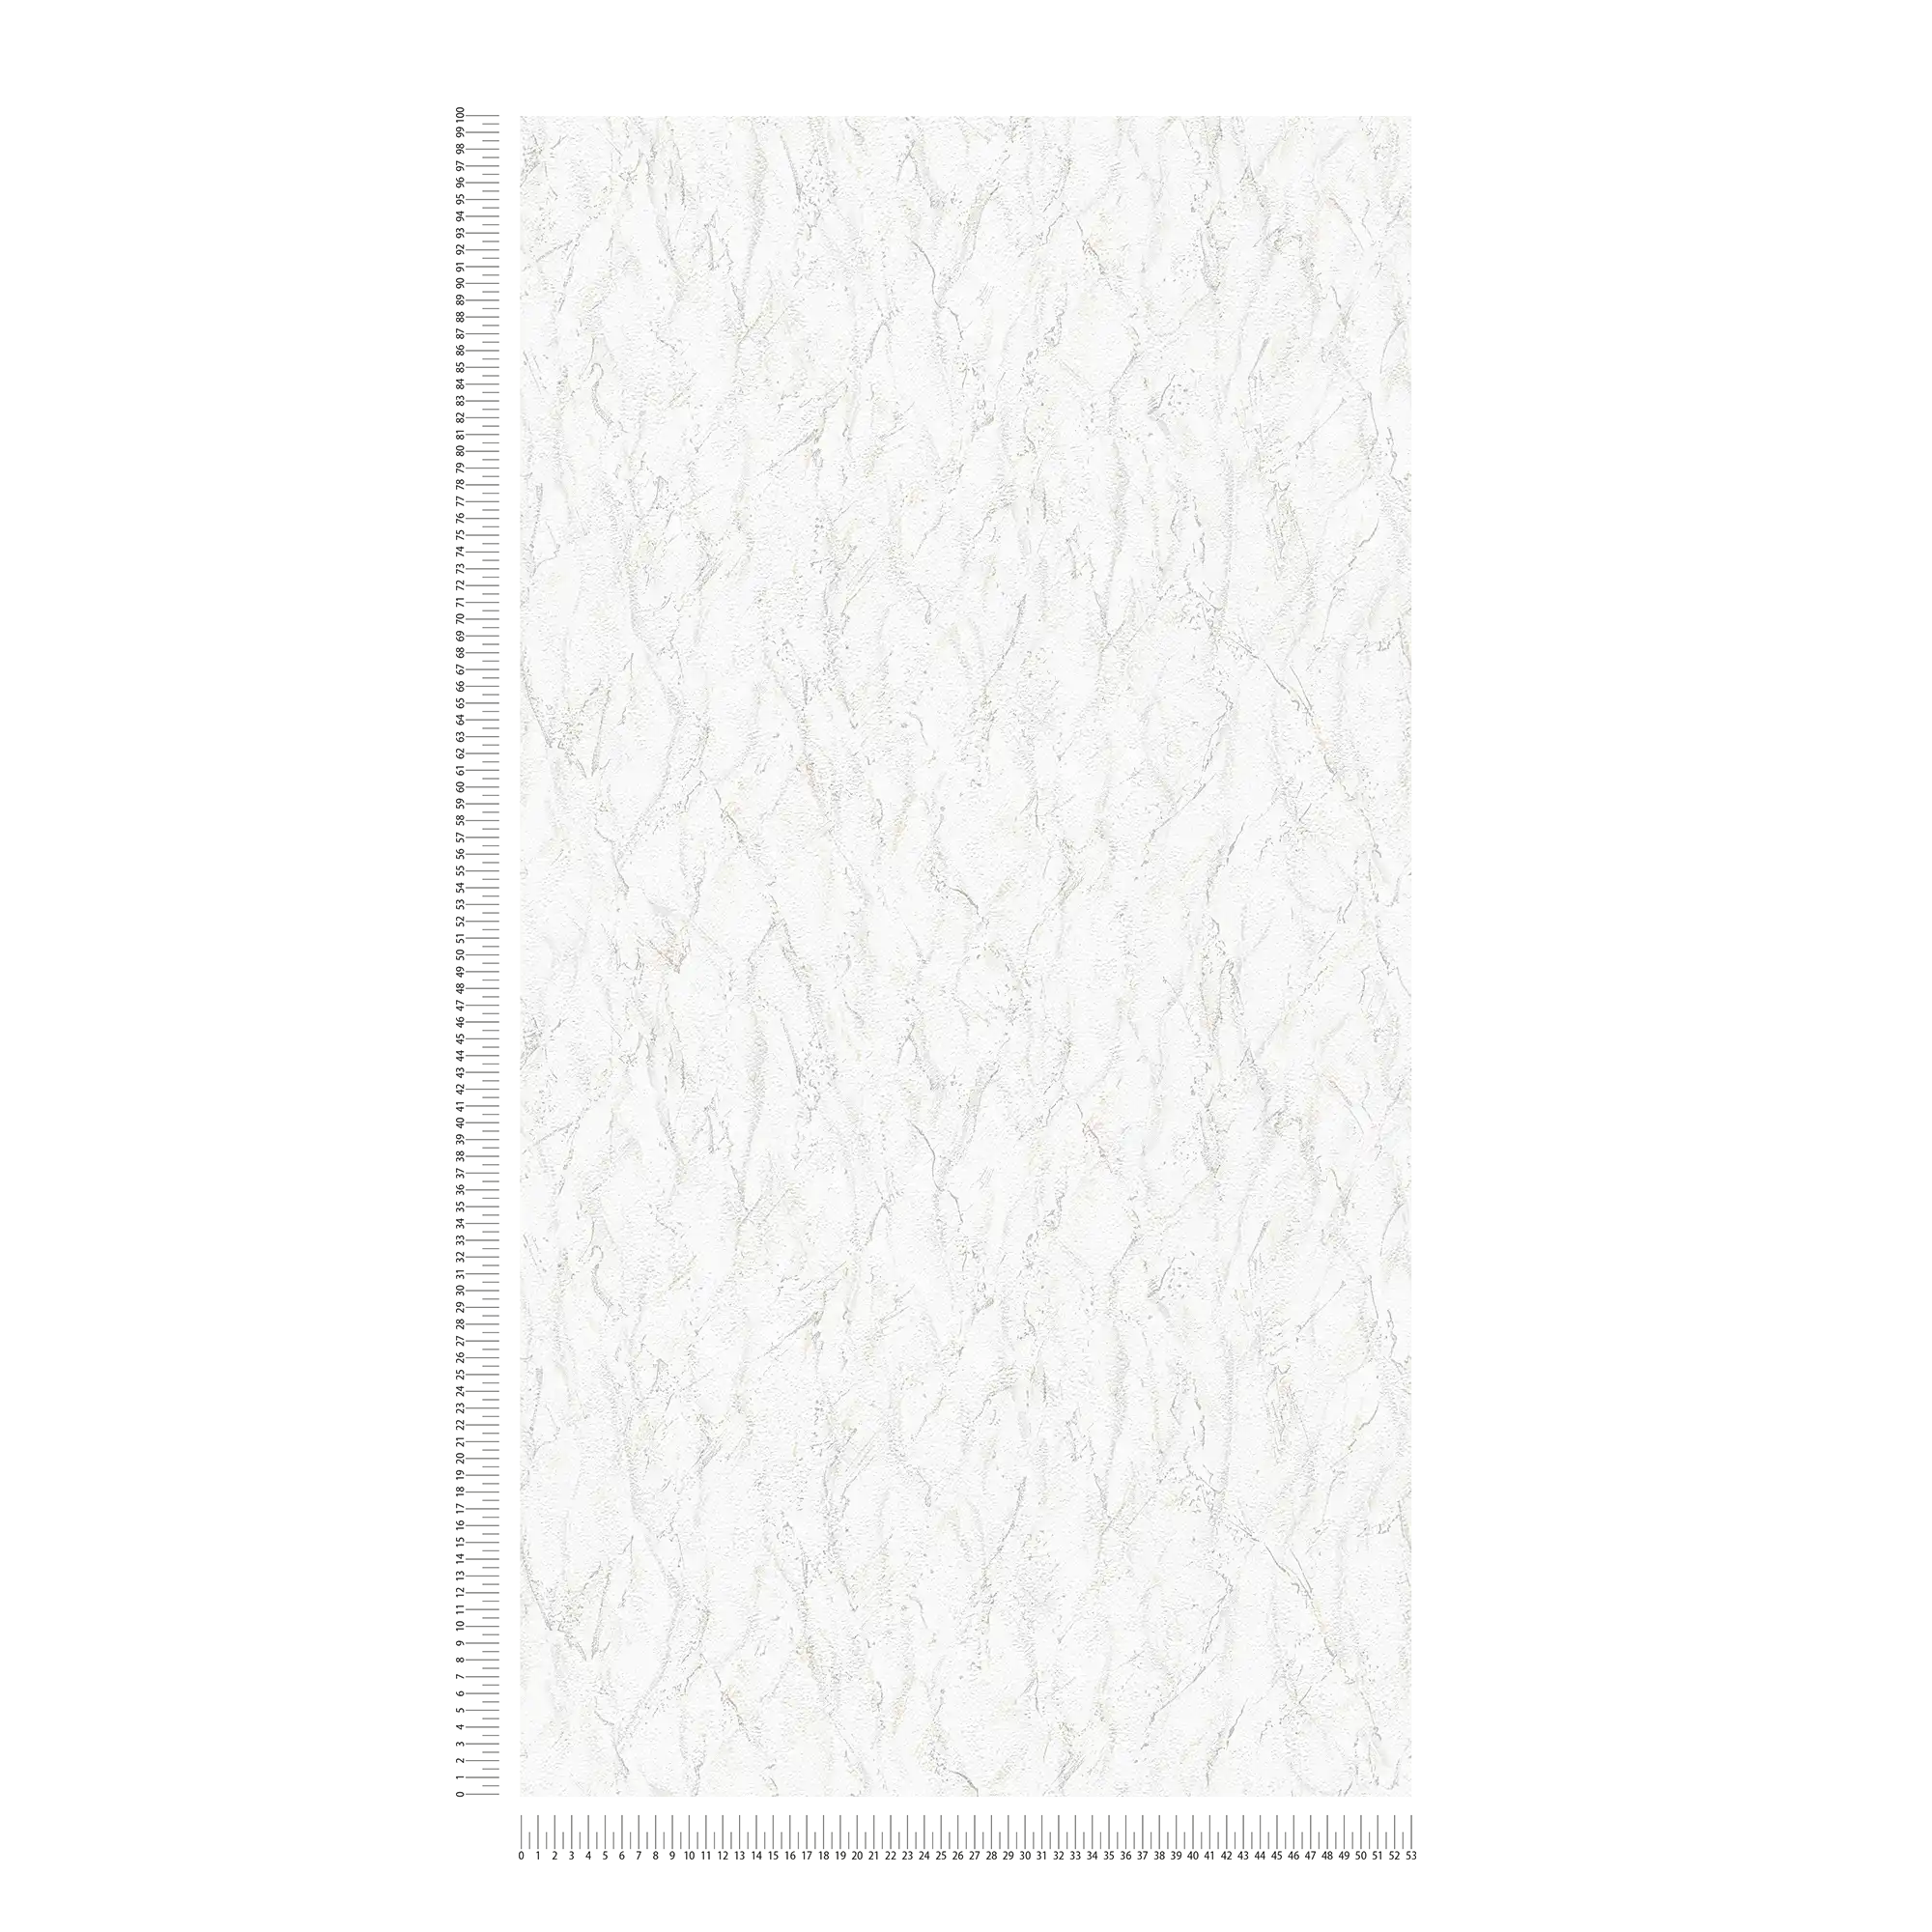             papier peint en papier texturé avec motif gaufré & effet marbré - gris, blanc
        